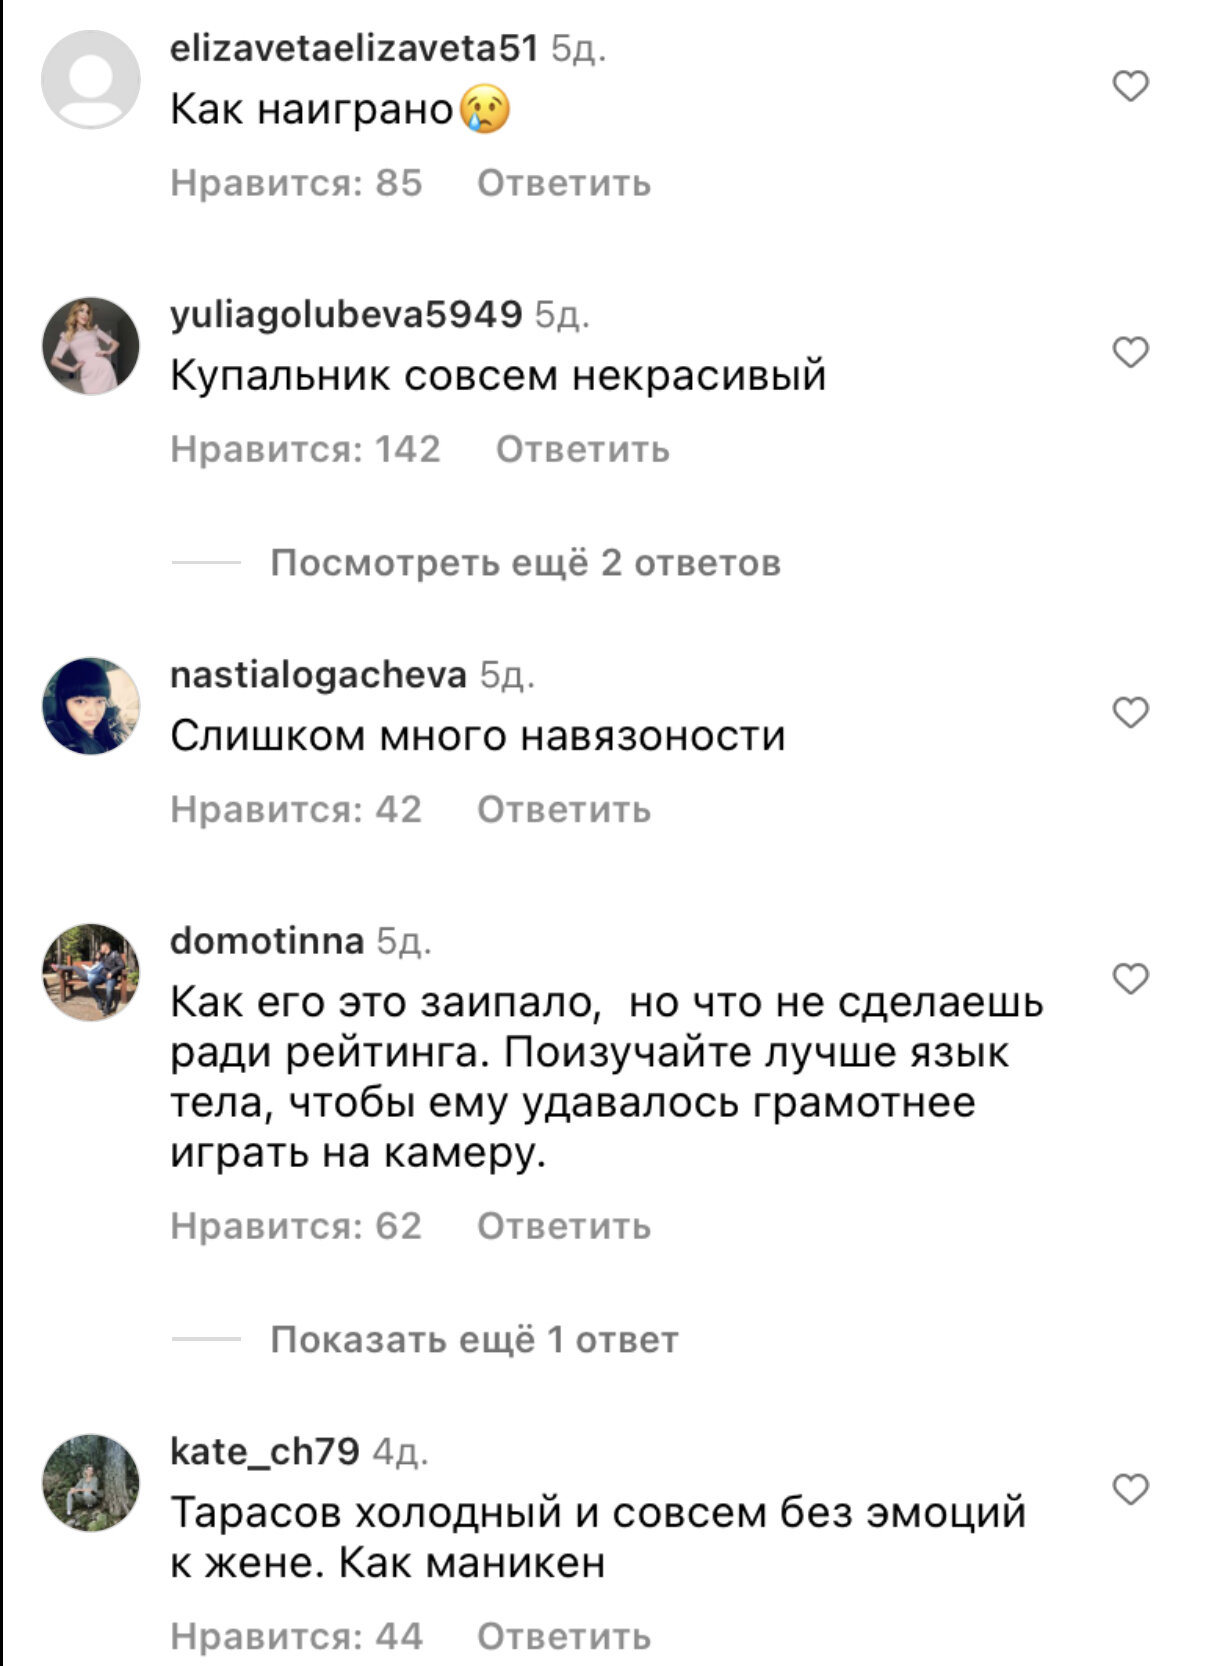 Анастасия Костенко страдает с похмелья и гордится Дмитрием Тарасовым, который не пьёт аж два месяца